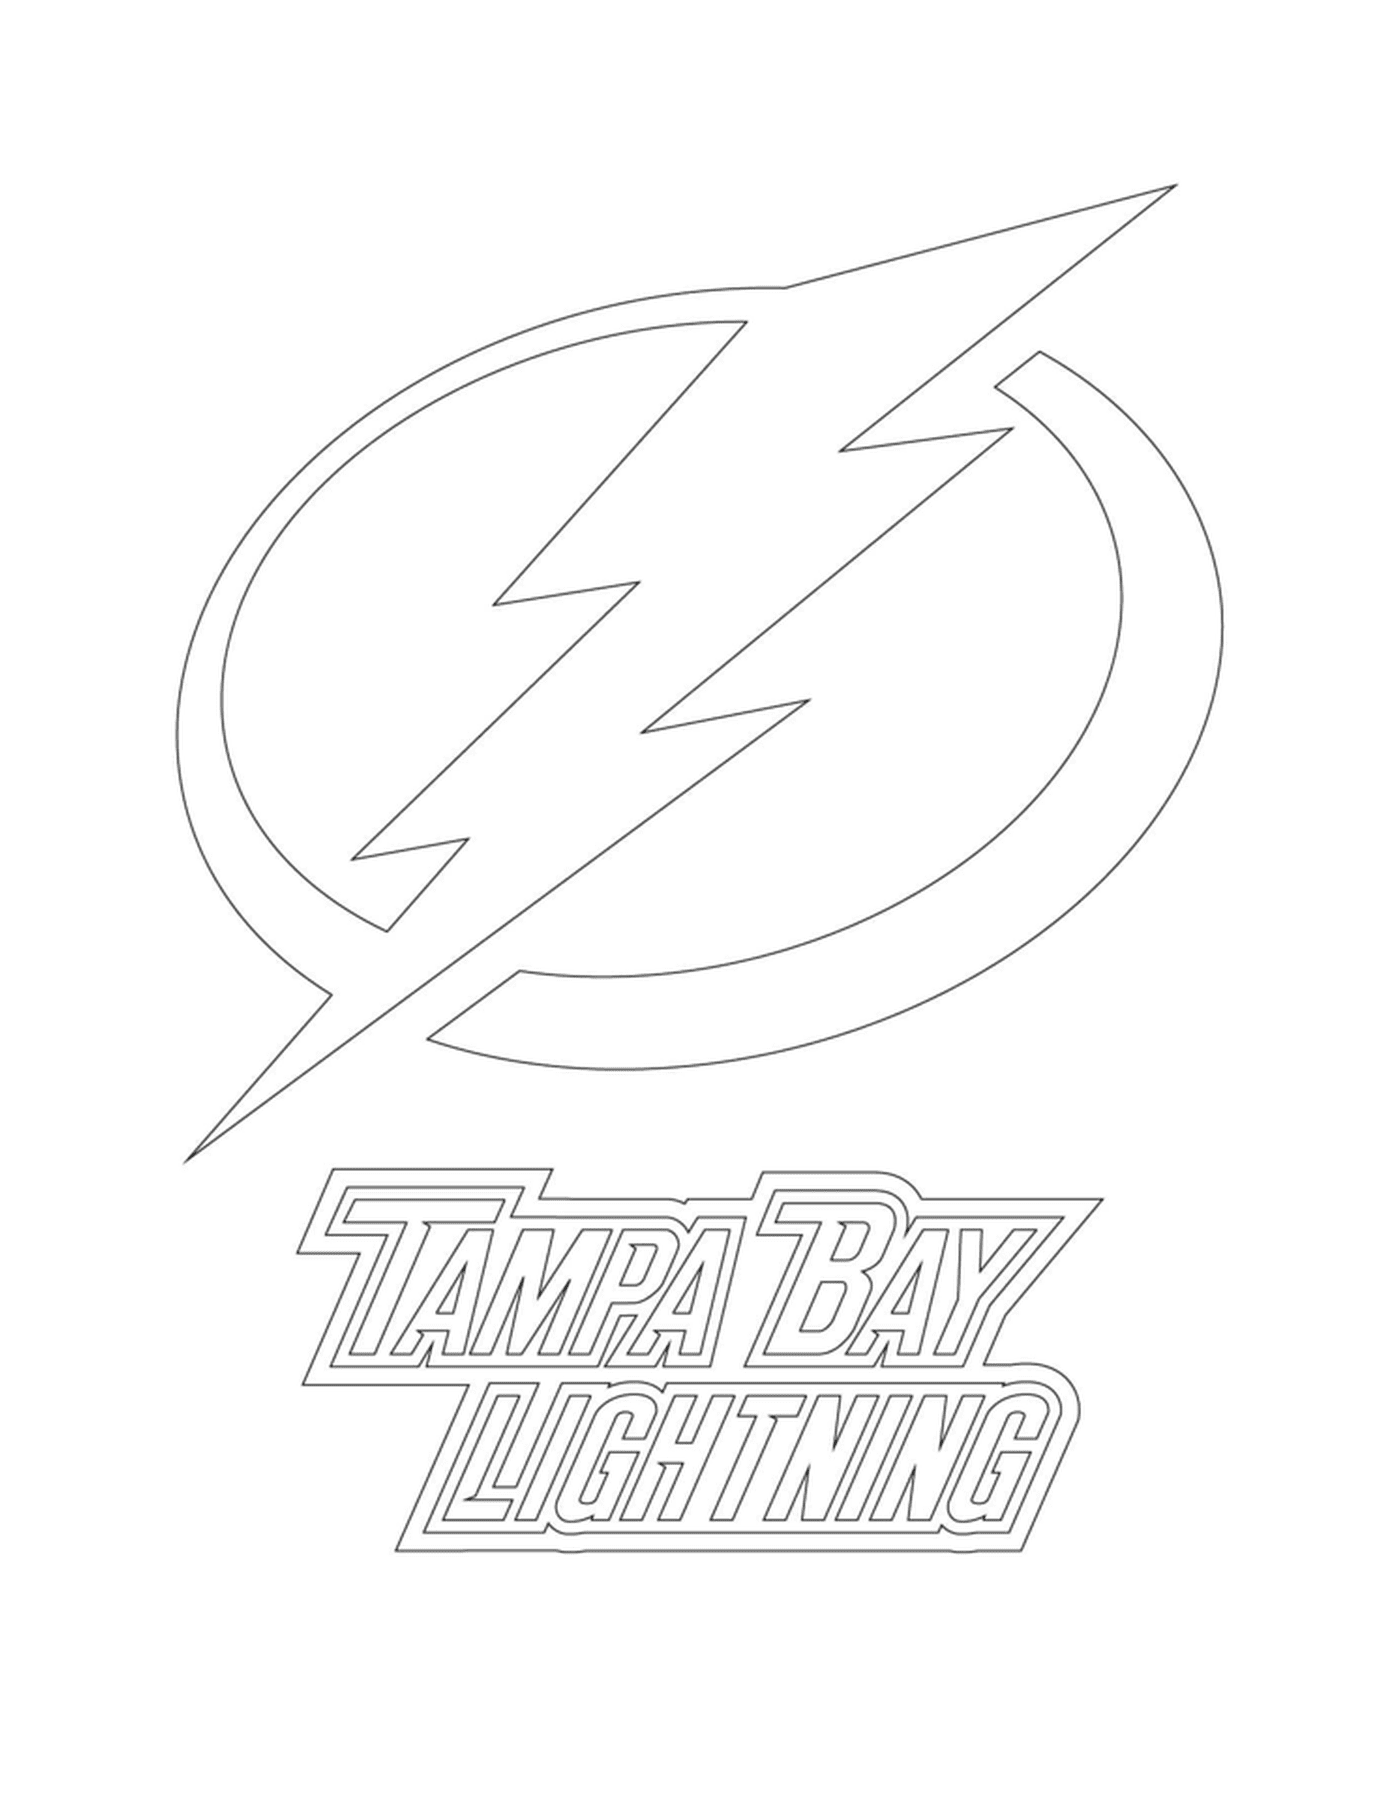  Tampa Bay Lightning Logo 